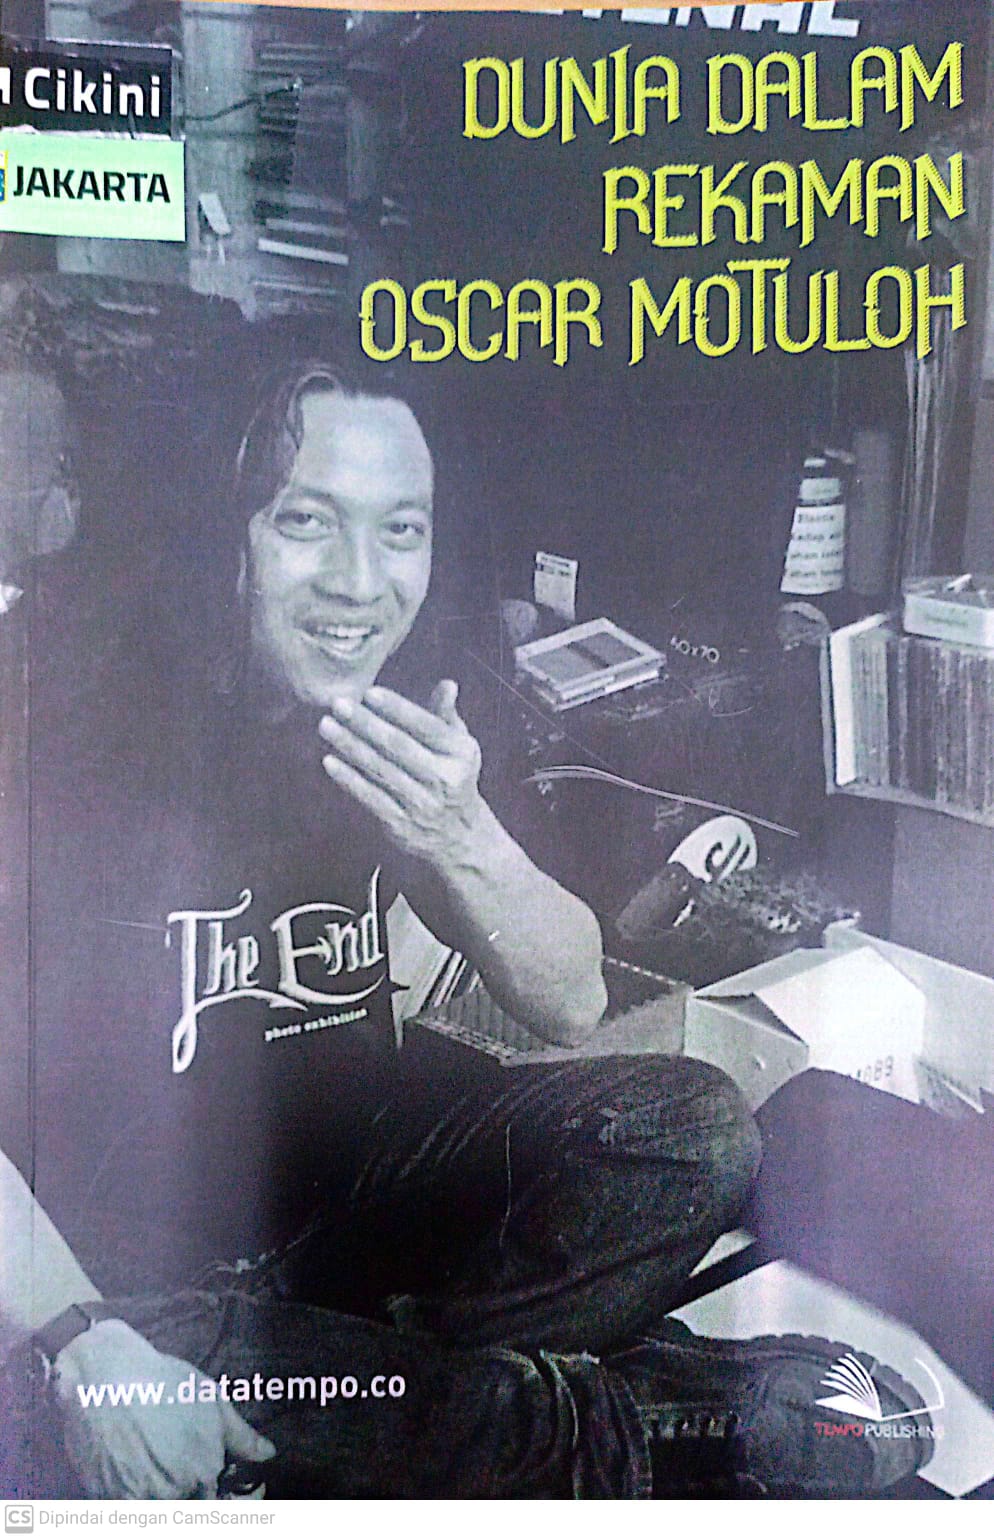 Dunia dalam rekaman Oscar Motuloh